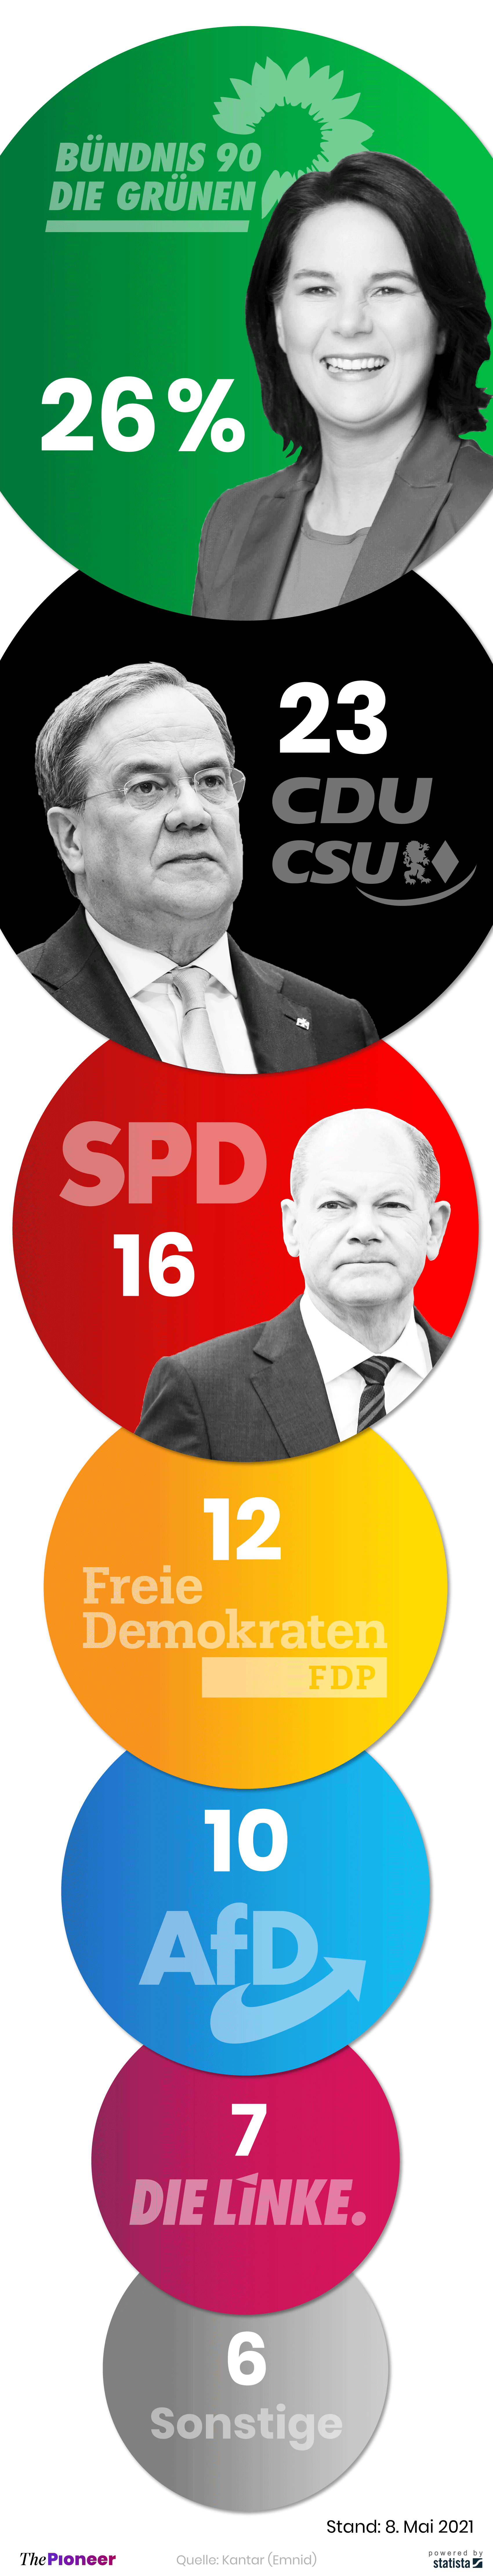 Aktuelle Umfragewerte zur Bundestagswahl in Deutschland, in Prozent